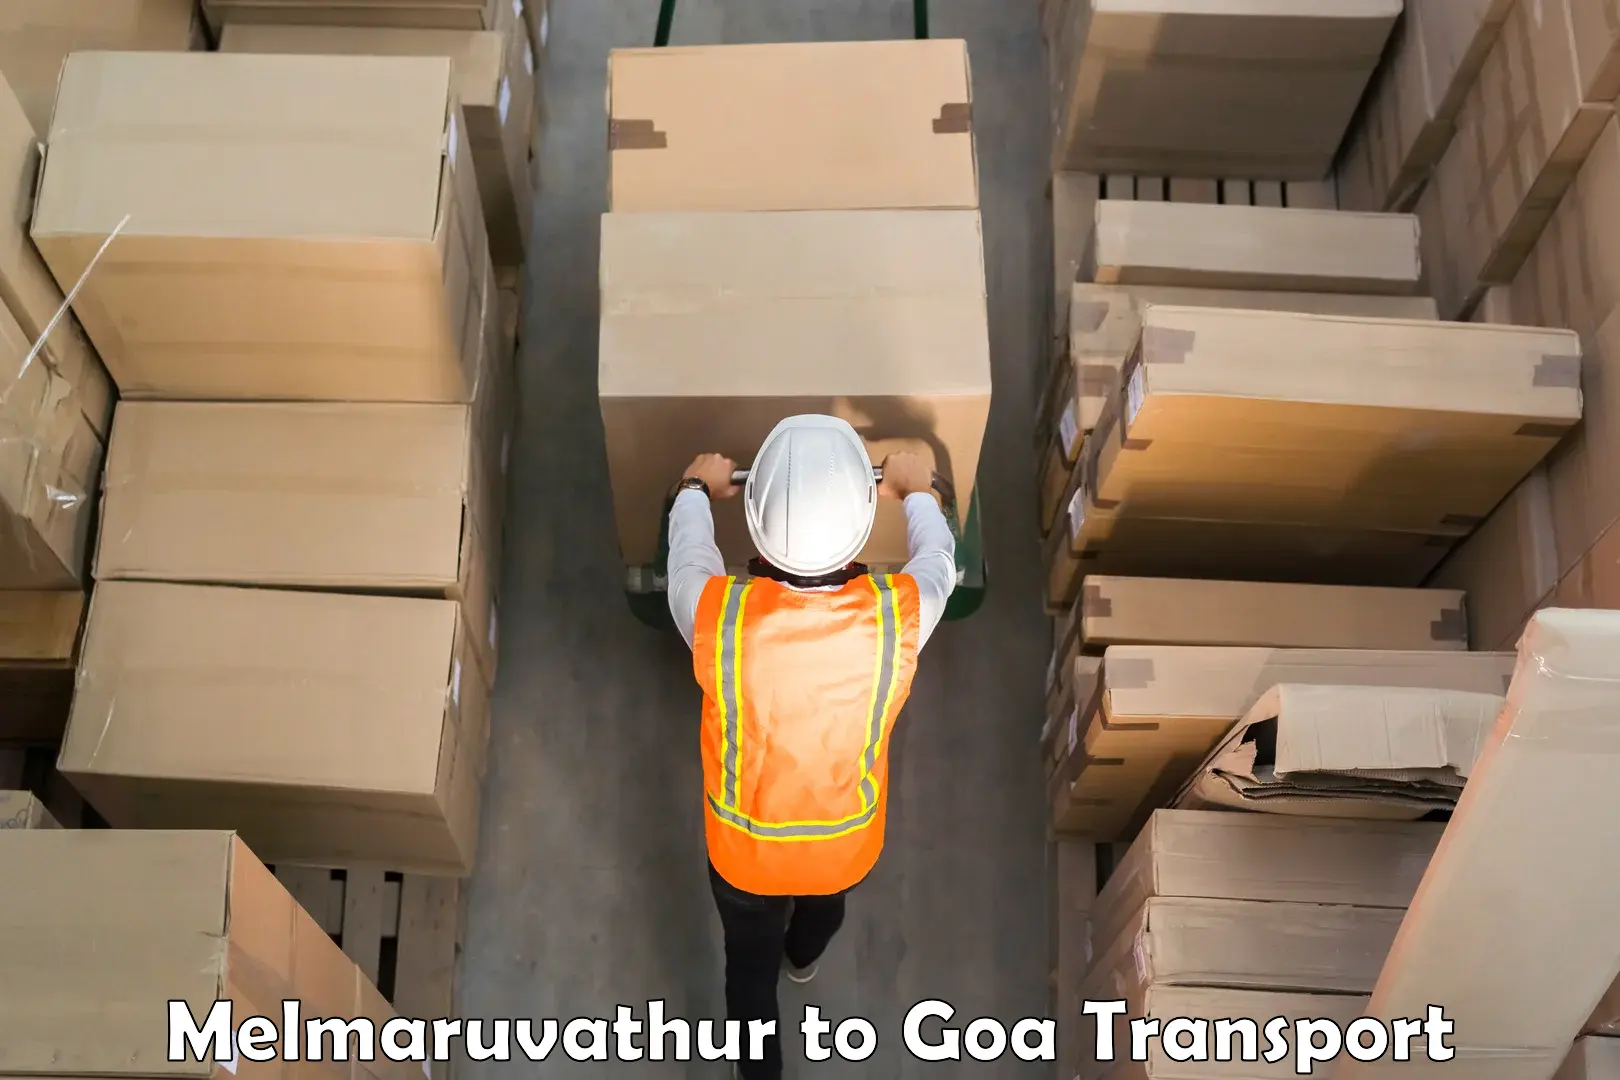 Shipping partner Melmaruvathur to IIT Goa